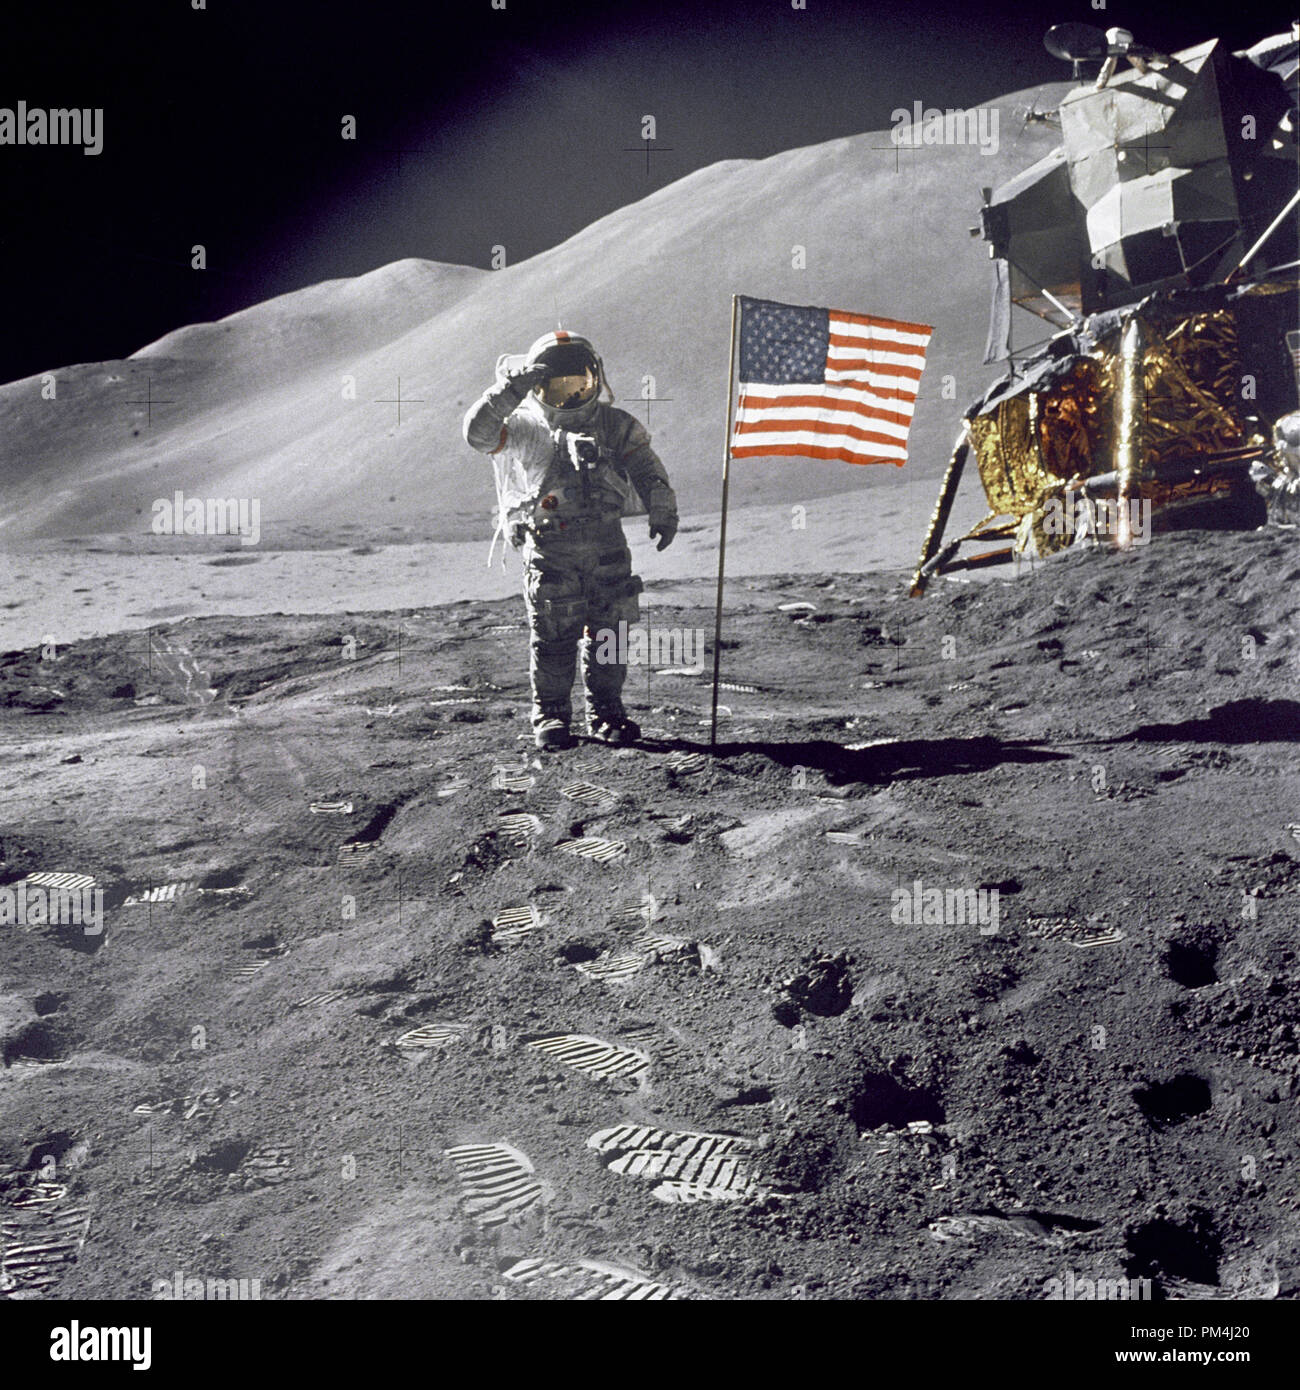 Astronaute David R. Scott, commandant, donne un salut militaire tout en se tenant à côté du drapeau des États-Unis déployée au cours de la surface lunaire Apollo 15 activité extravéhiculaire (EVA) à l'Hadley-Apennine site d'atterrissage. Le drapeau a été déployé à la fin de l'EVA-2. Le Module lunaire 'Falcon' est partiellement visible sur la droite. Hadley Delta dans l'arrière-plan s'élève à environ 4 000 mètres (environ 13 124 pieds) au-dessus de la plaine. La base de la montagne est d'environ 5 kilomètres (environ 3 milles) de l'établissement. Cette photographie a été prise par l'astronaute James B. Irwin, pilote du module lunaire. 1 août, 1971 Fichier R Banque D'Images